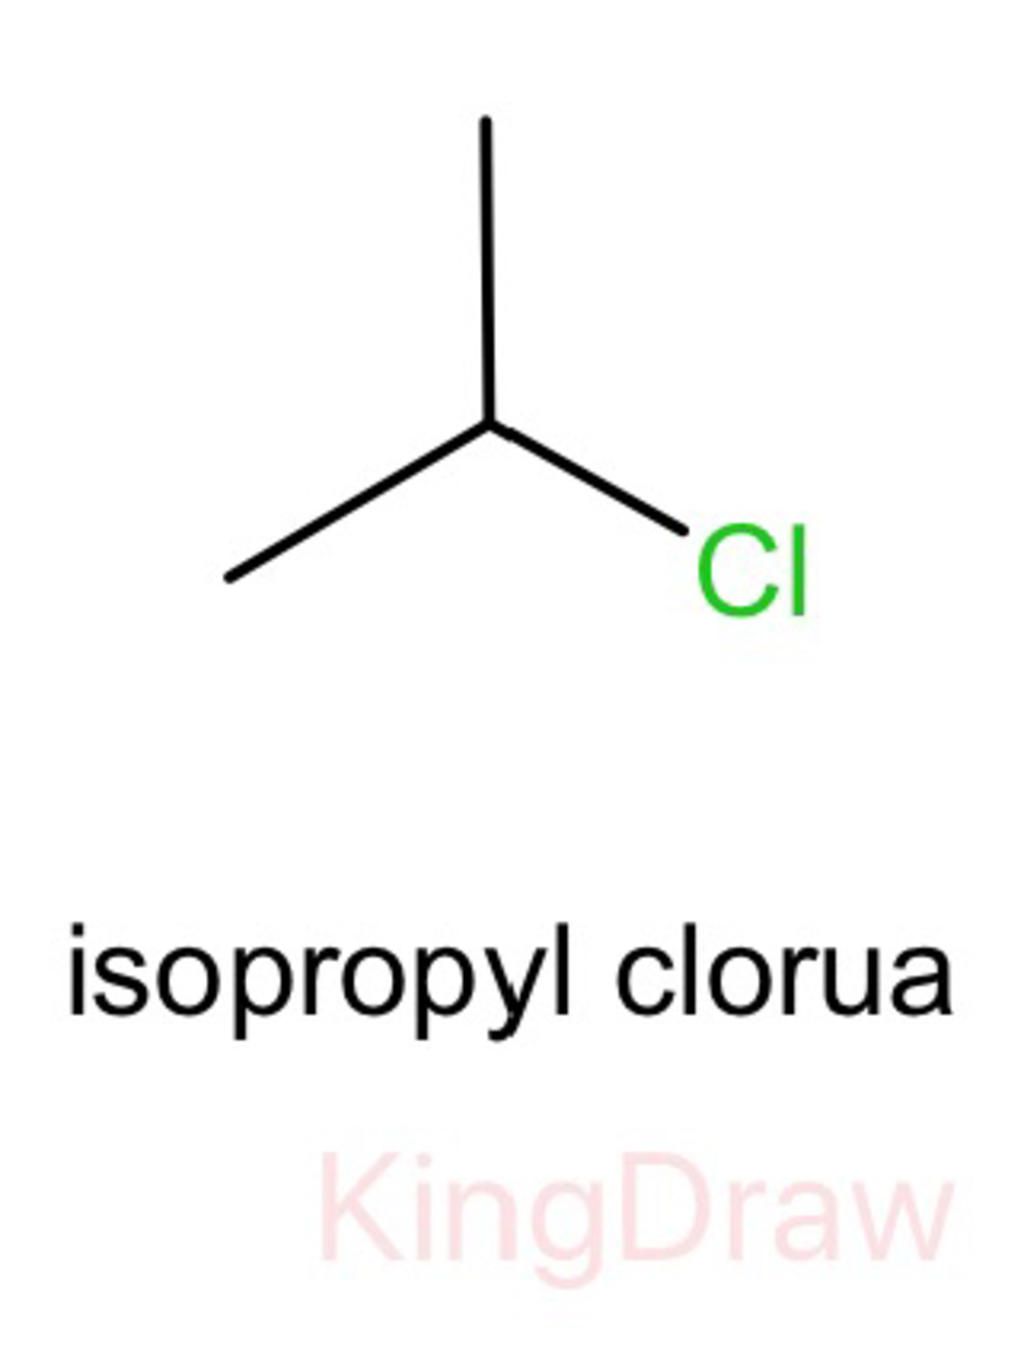 IsoPropyl clorua là gì?